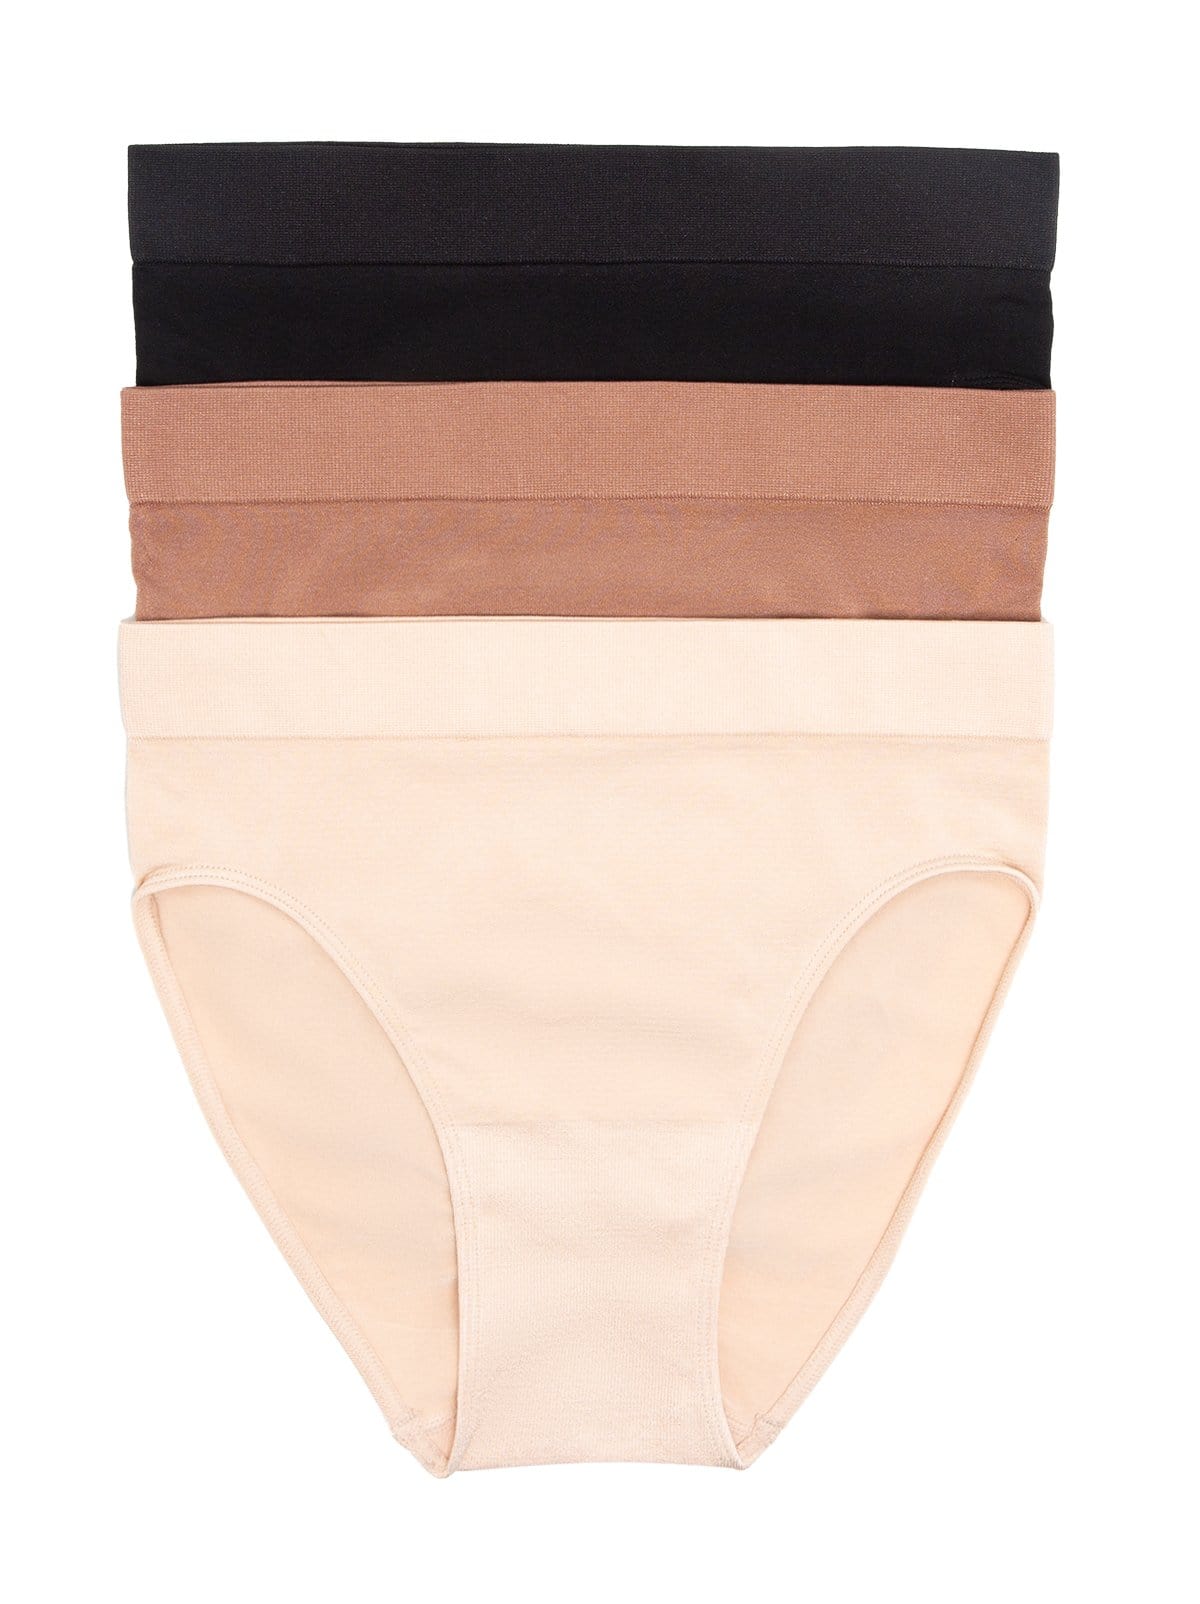 Shop Women's Underwear by Shape - Boyleg Briefs for Women